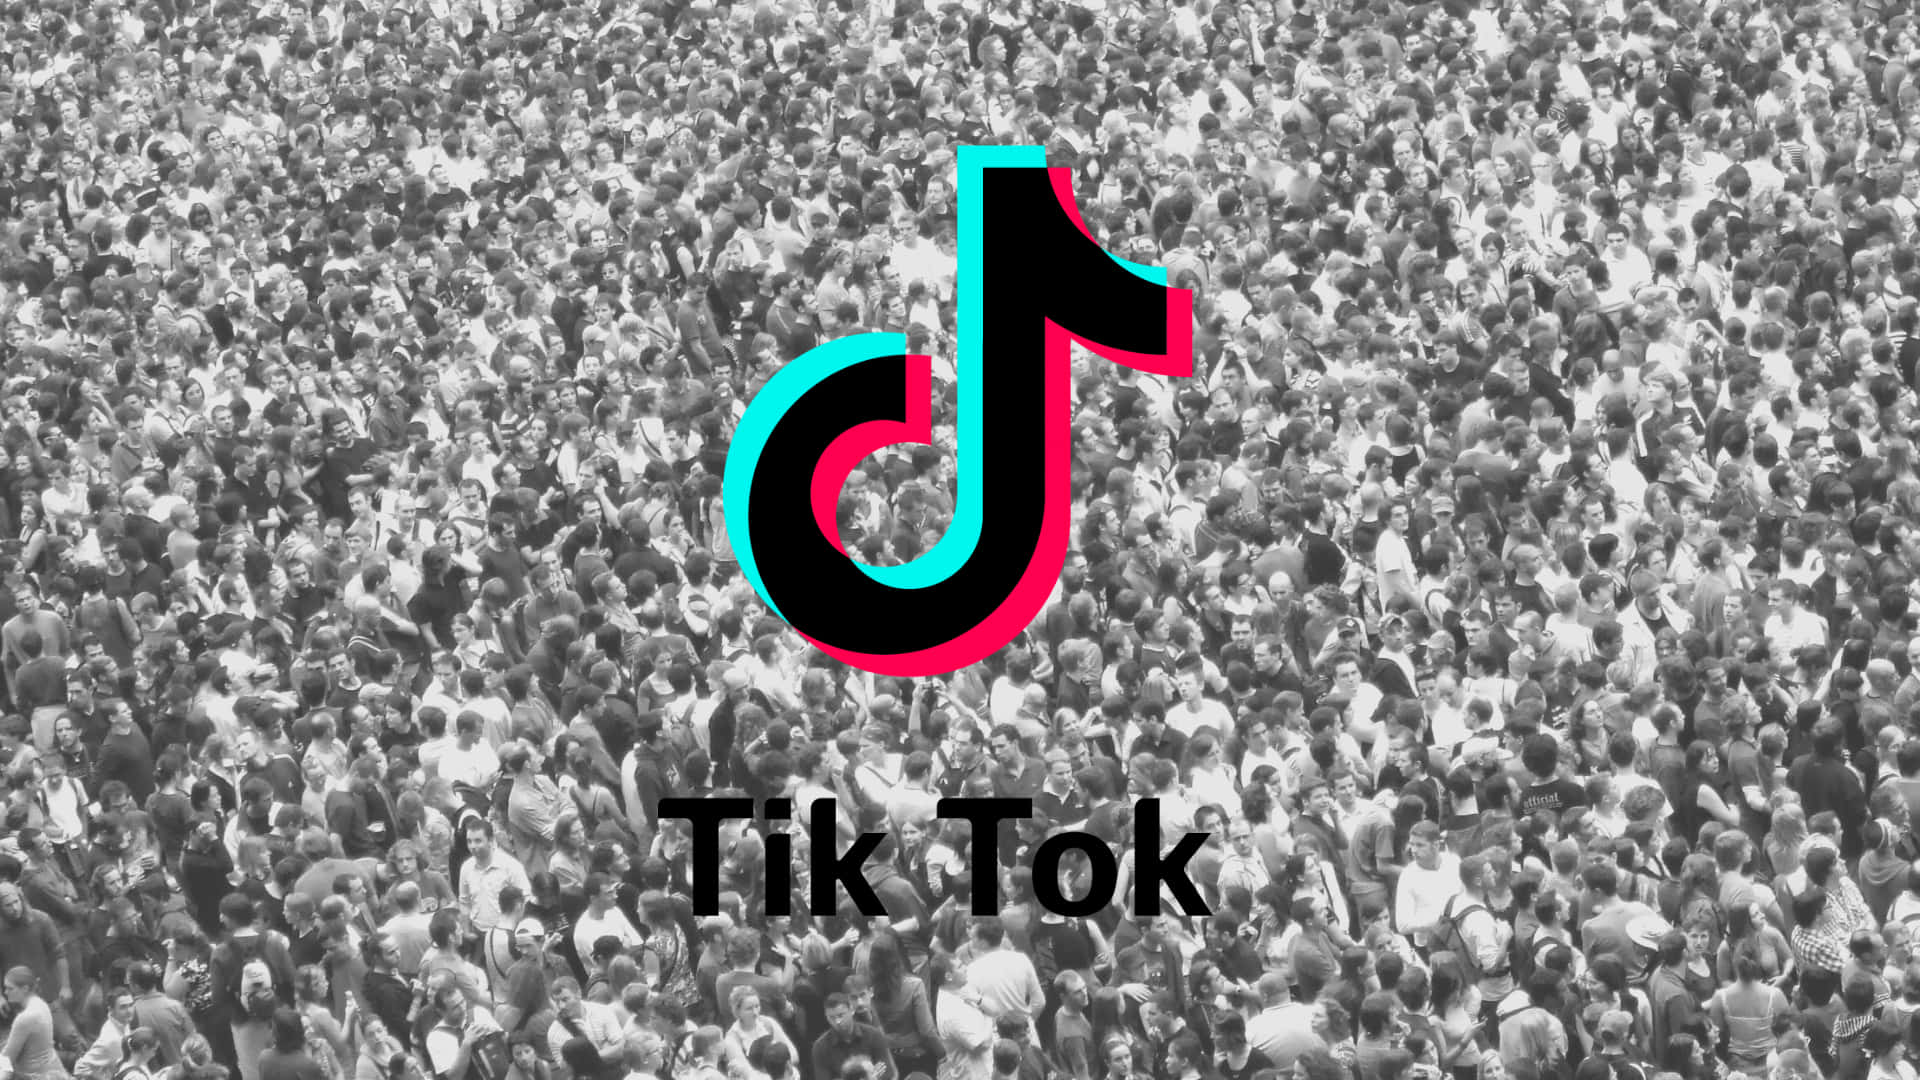 Logotipode Tik Tok Con Una Multitud De Personas